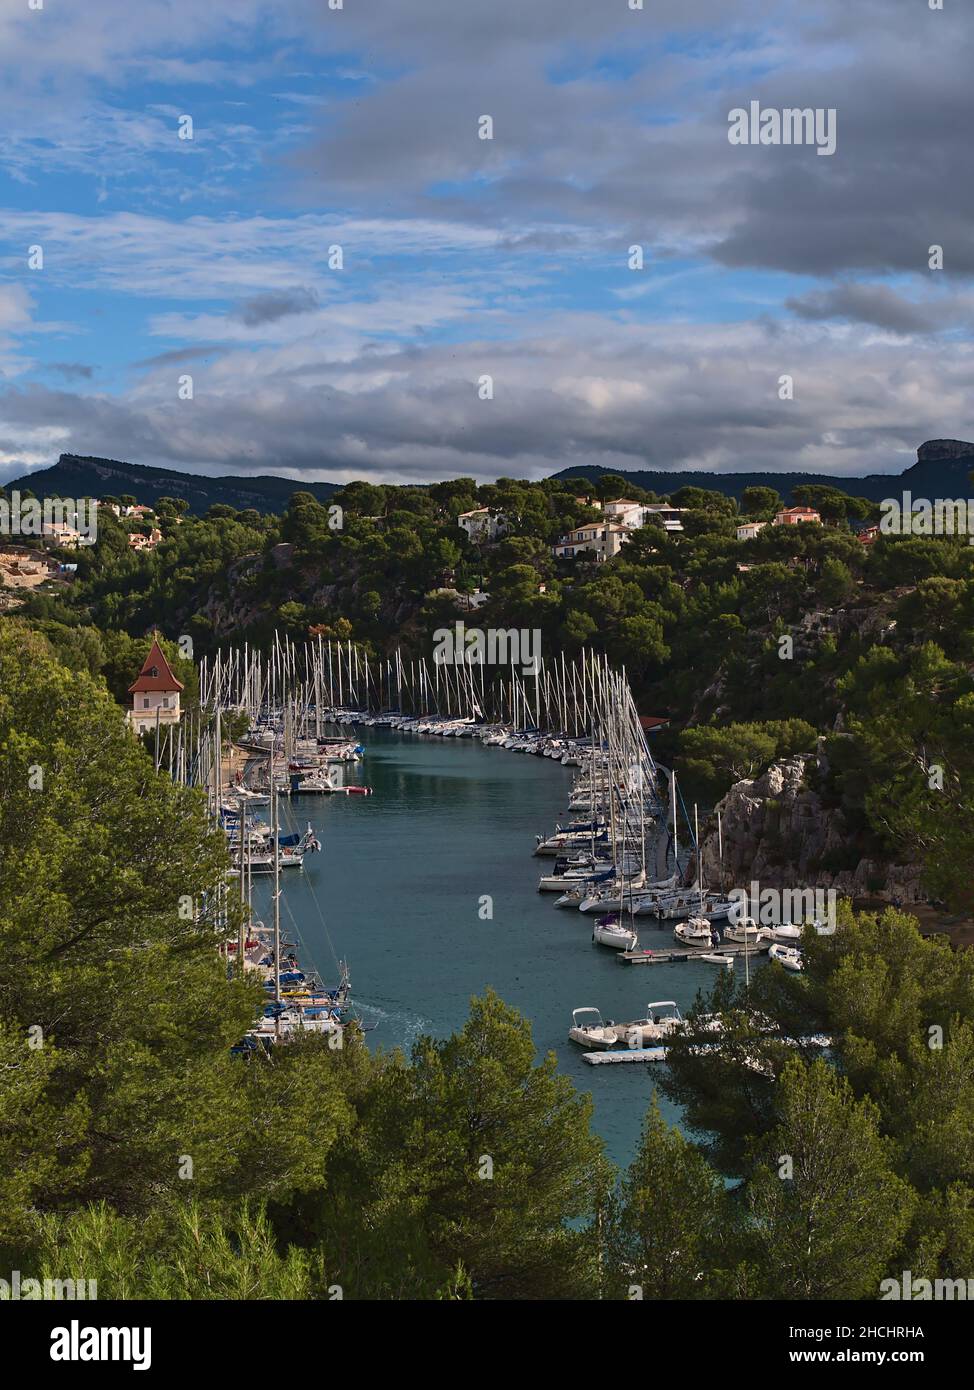 Belle vue sur la Calanque de Port-Miou près de Cassis, Côte d'Azur, France avec des bateaux d'amarrage le jour ensoleillé en automne aux Calanques. Banque D'Images